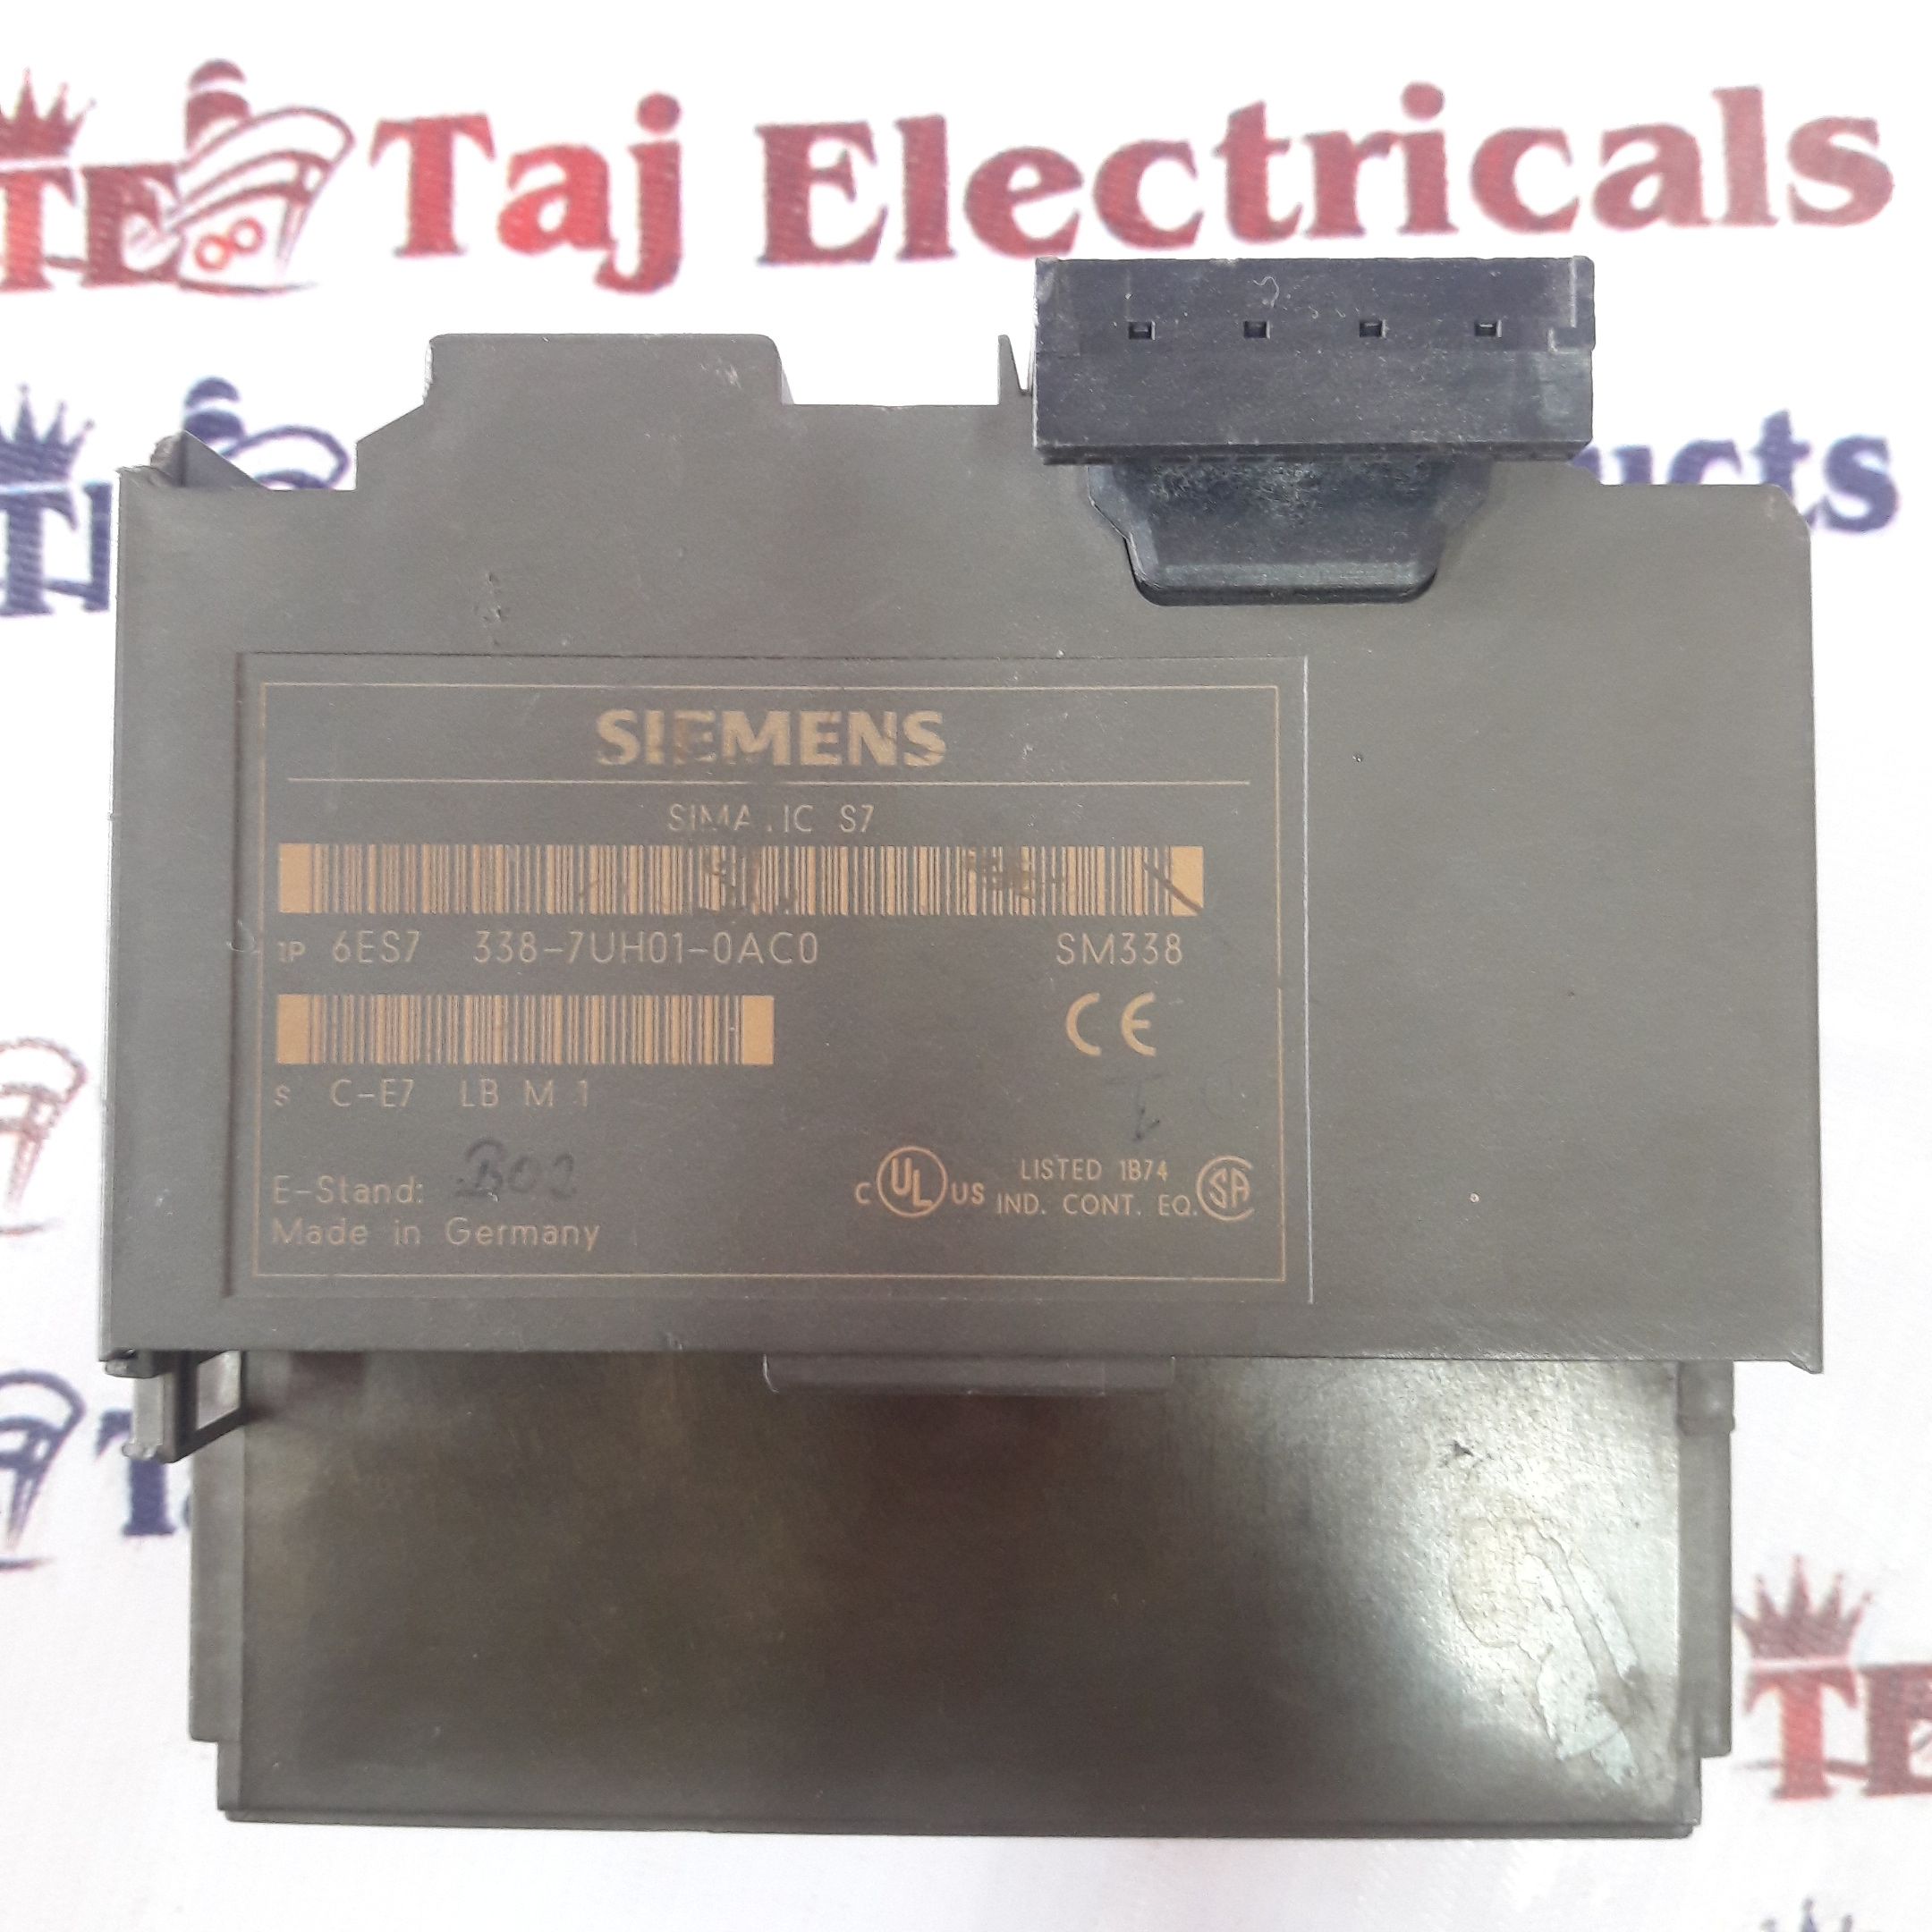 Siemens Simatic S7 6es7 338-7uh01-0ac0